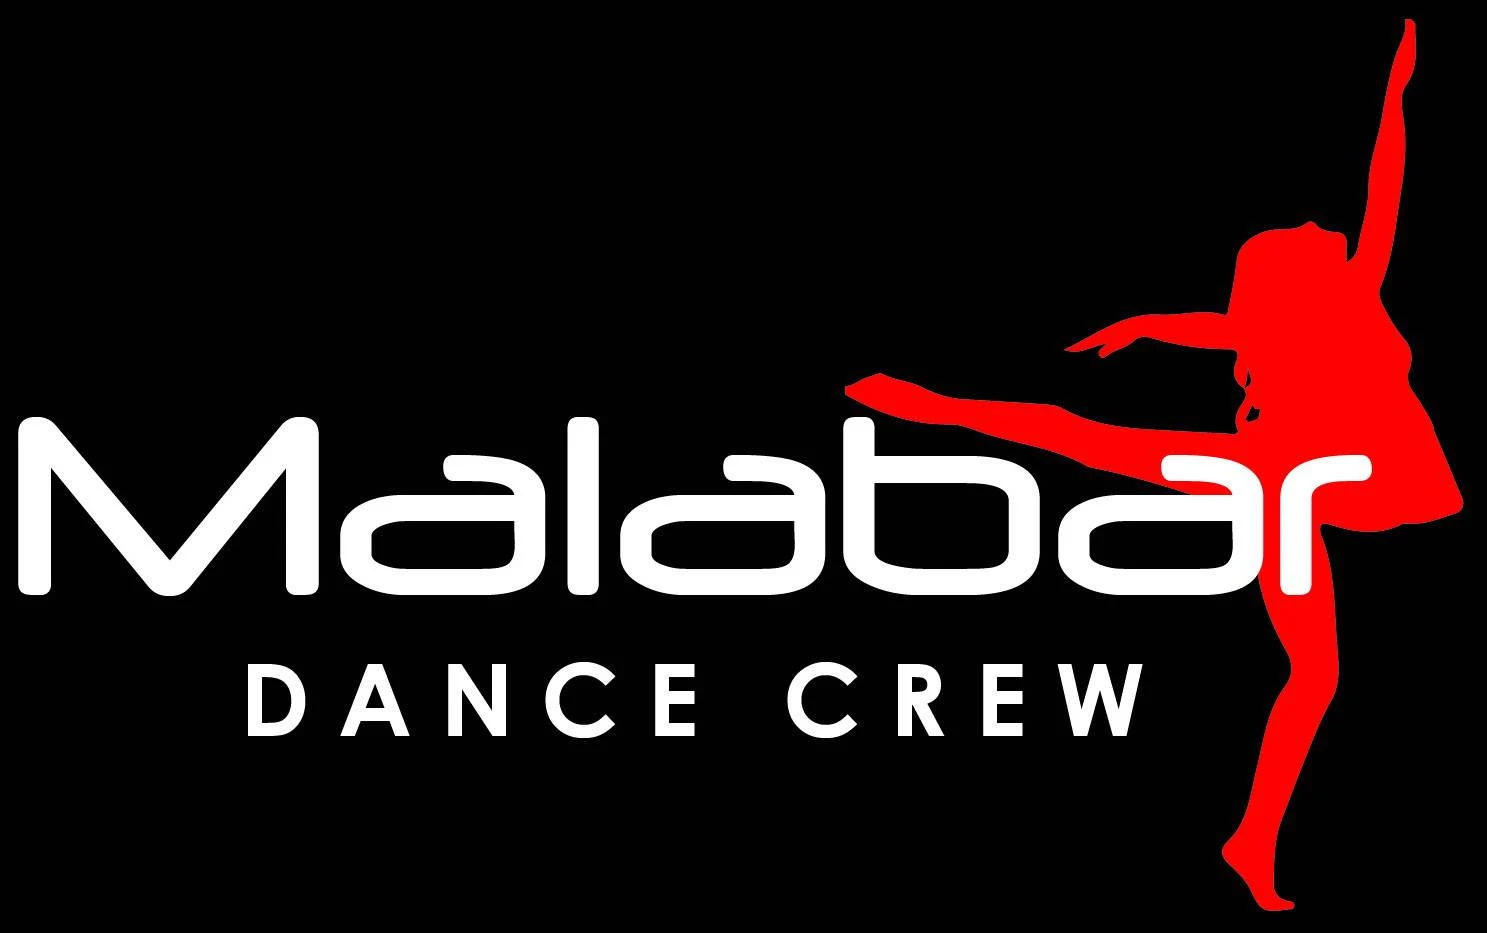 Malabar Dance Crew